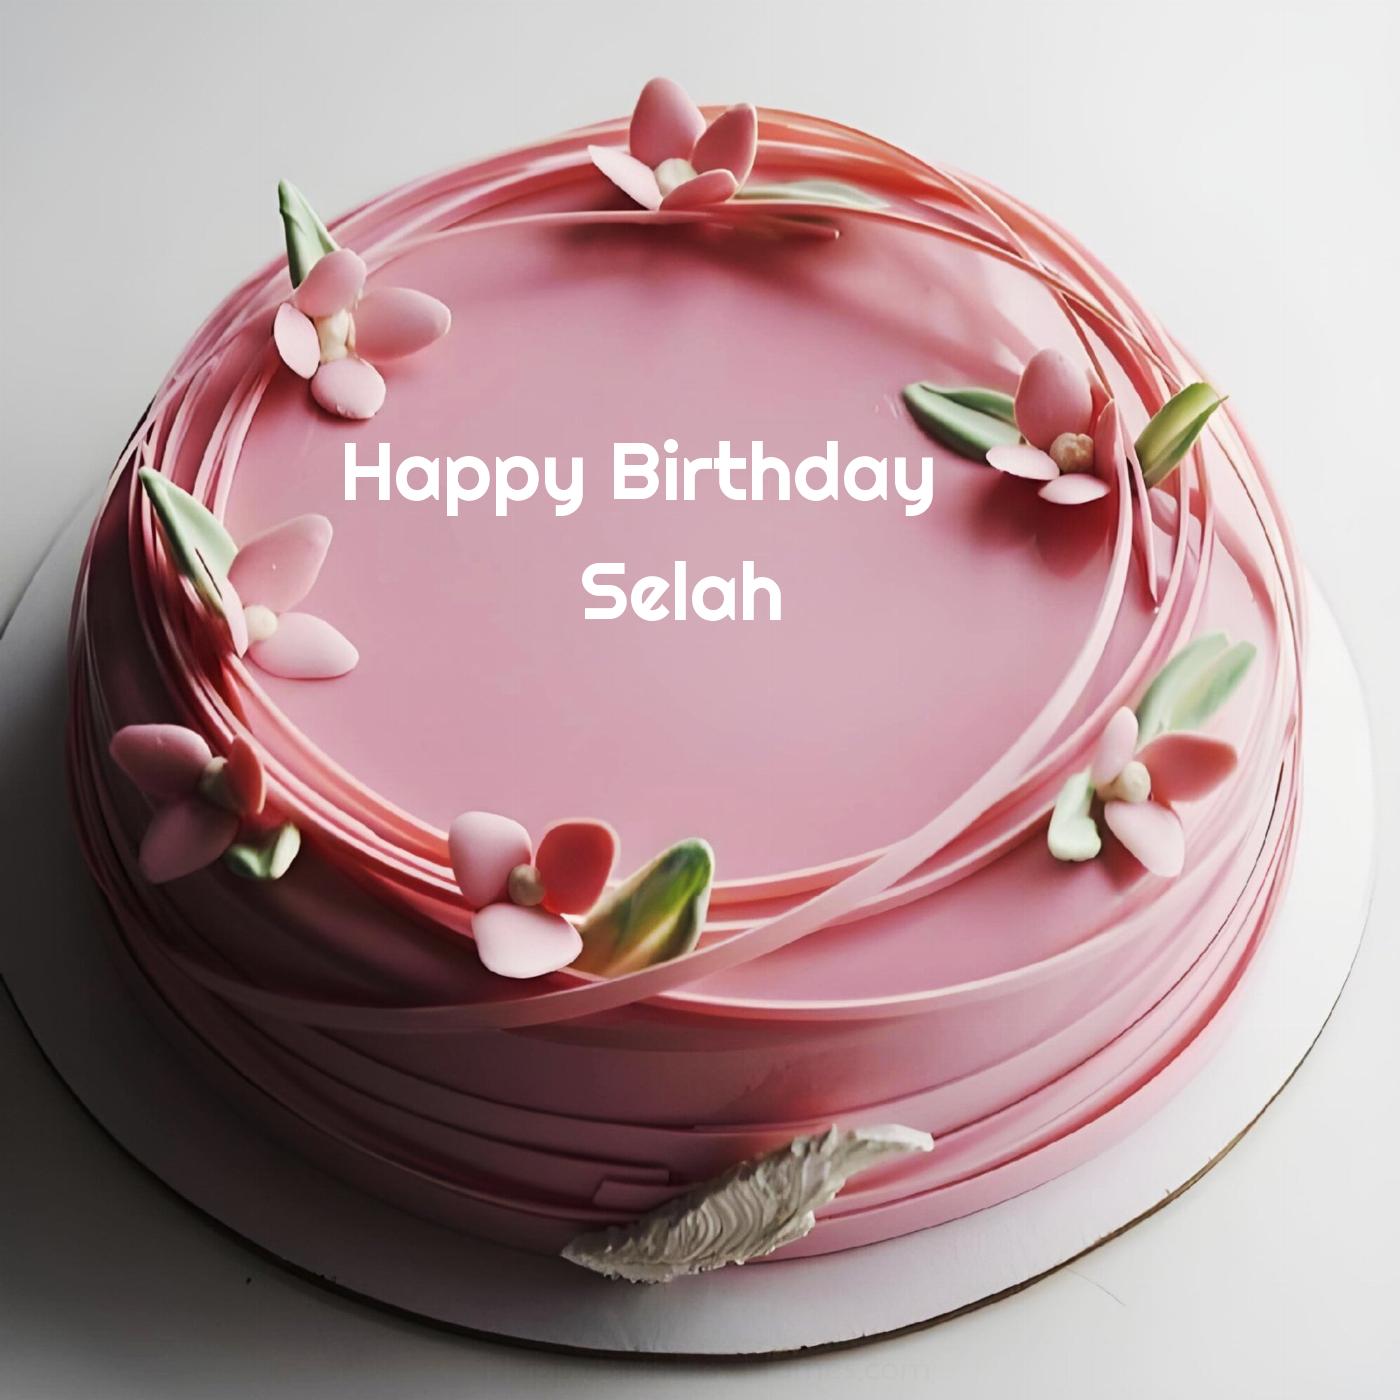 Happy Birthday Selah Pink Flowers Cake